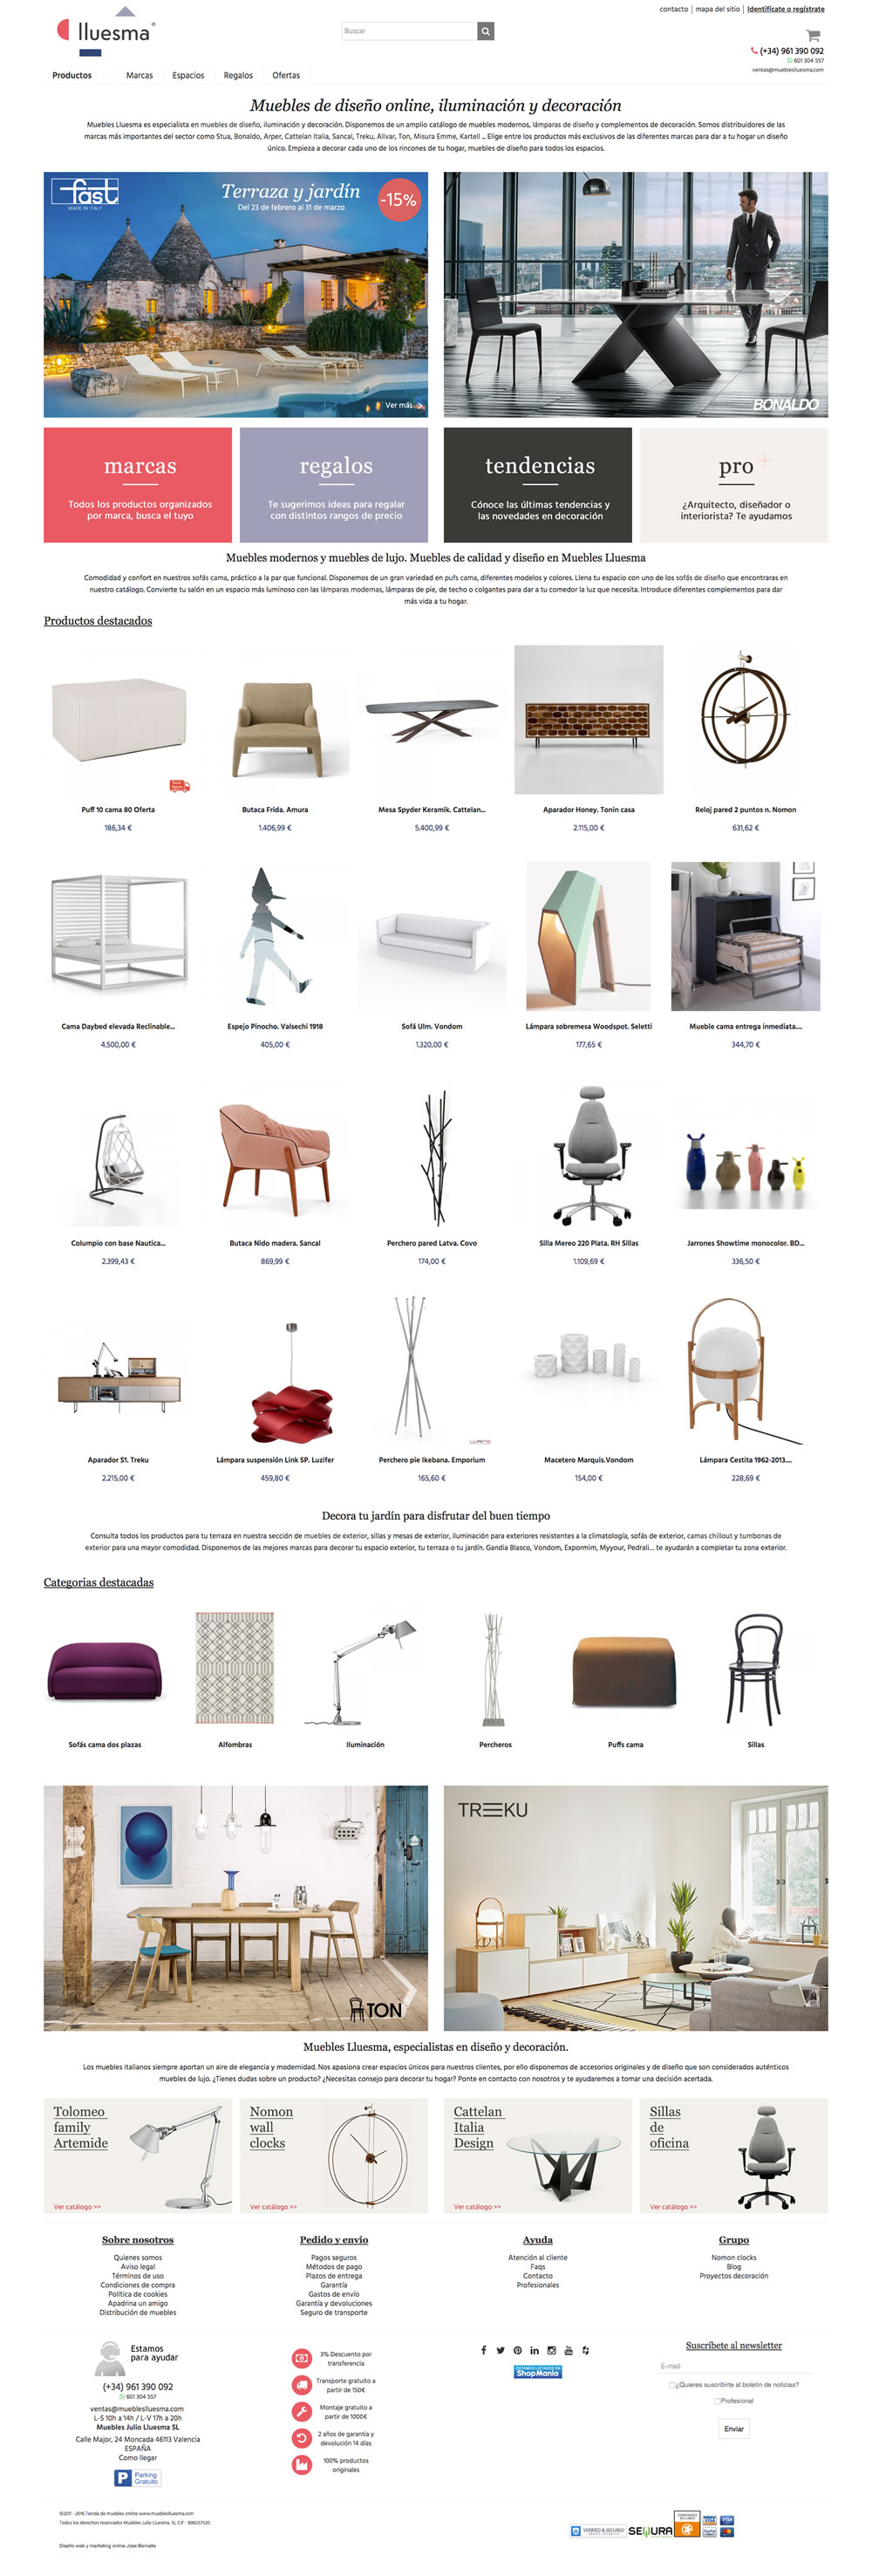 Diseño página web Lluesma año 2016